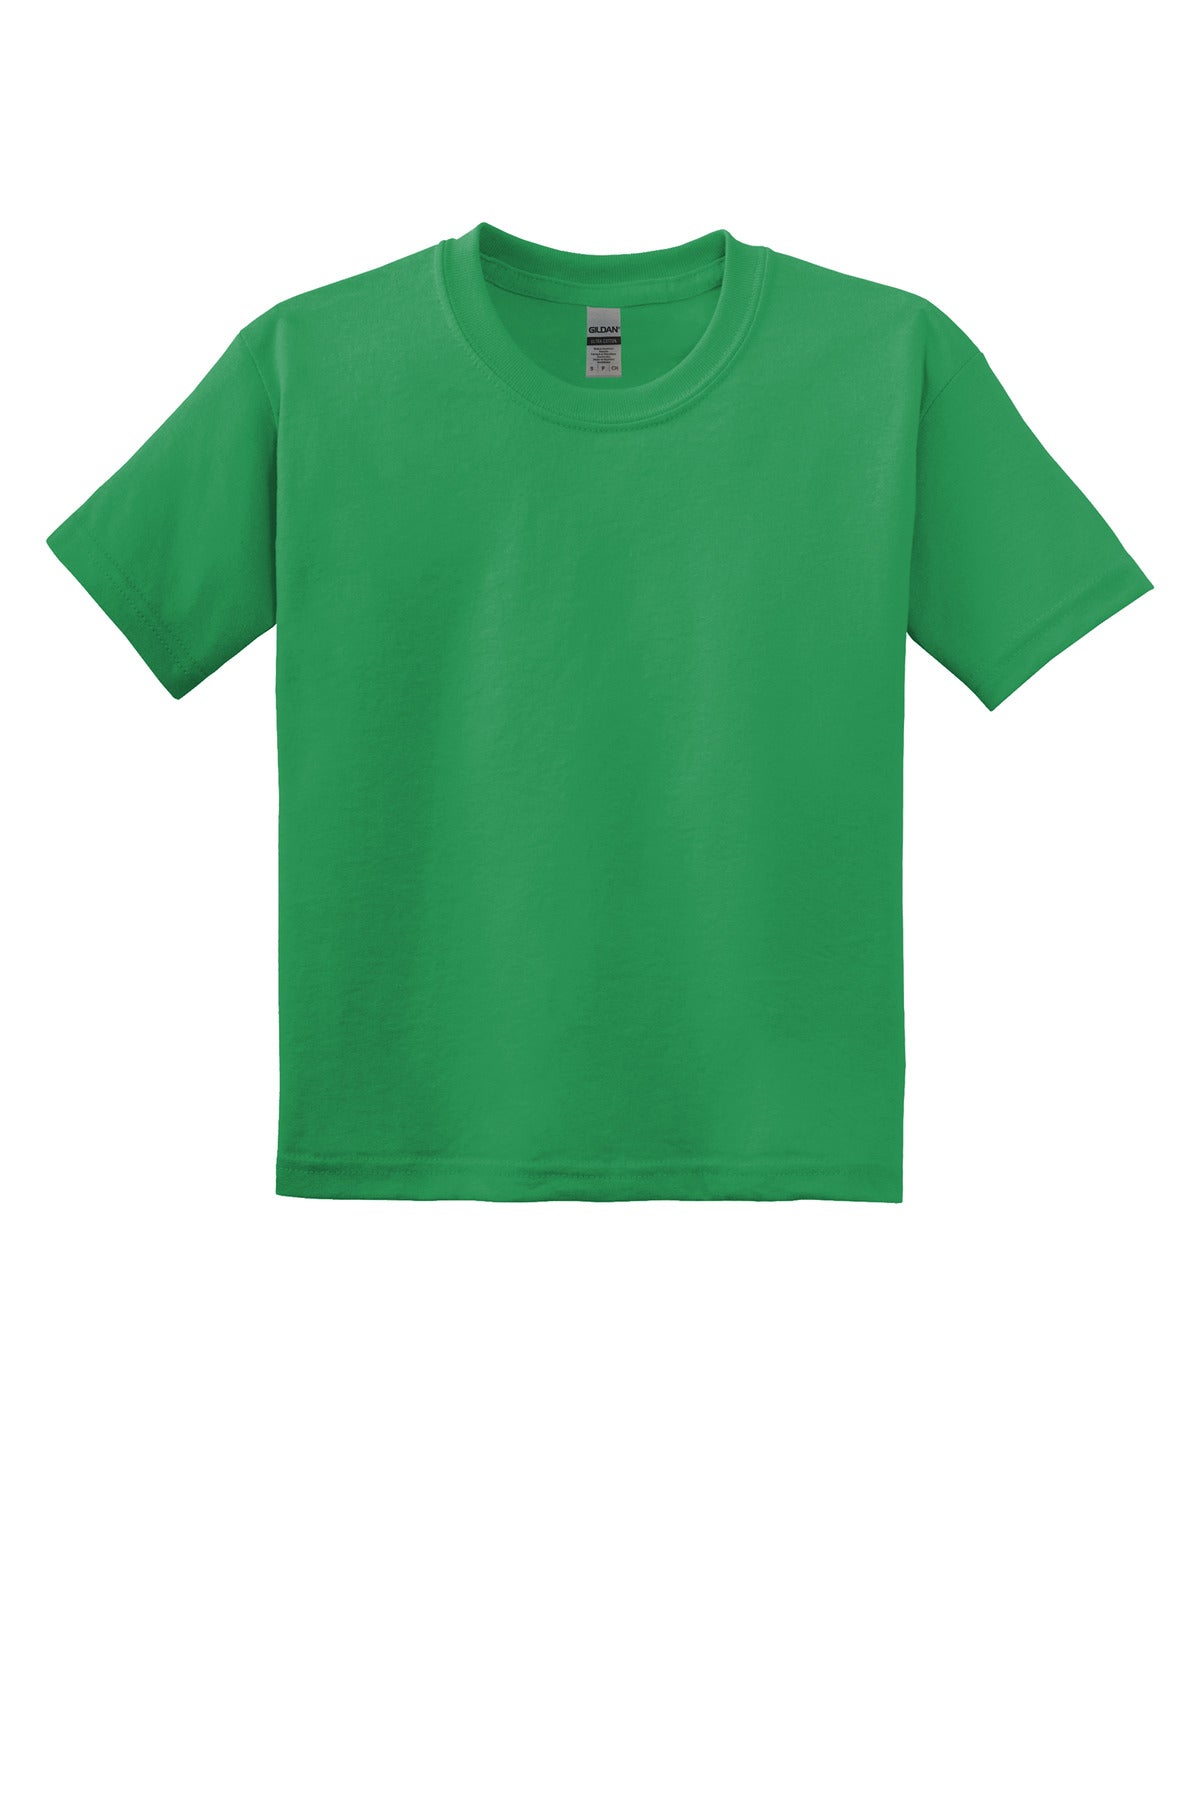 T-Shirts Irish Green Gildan